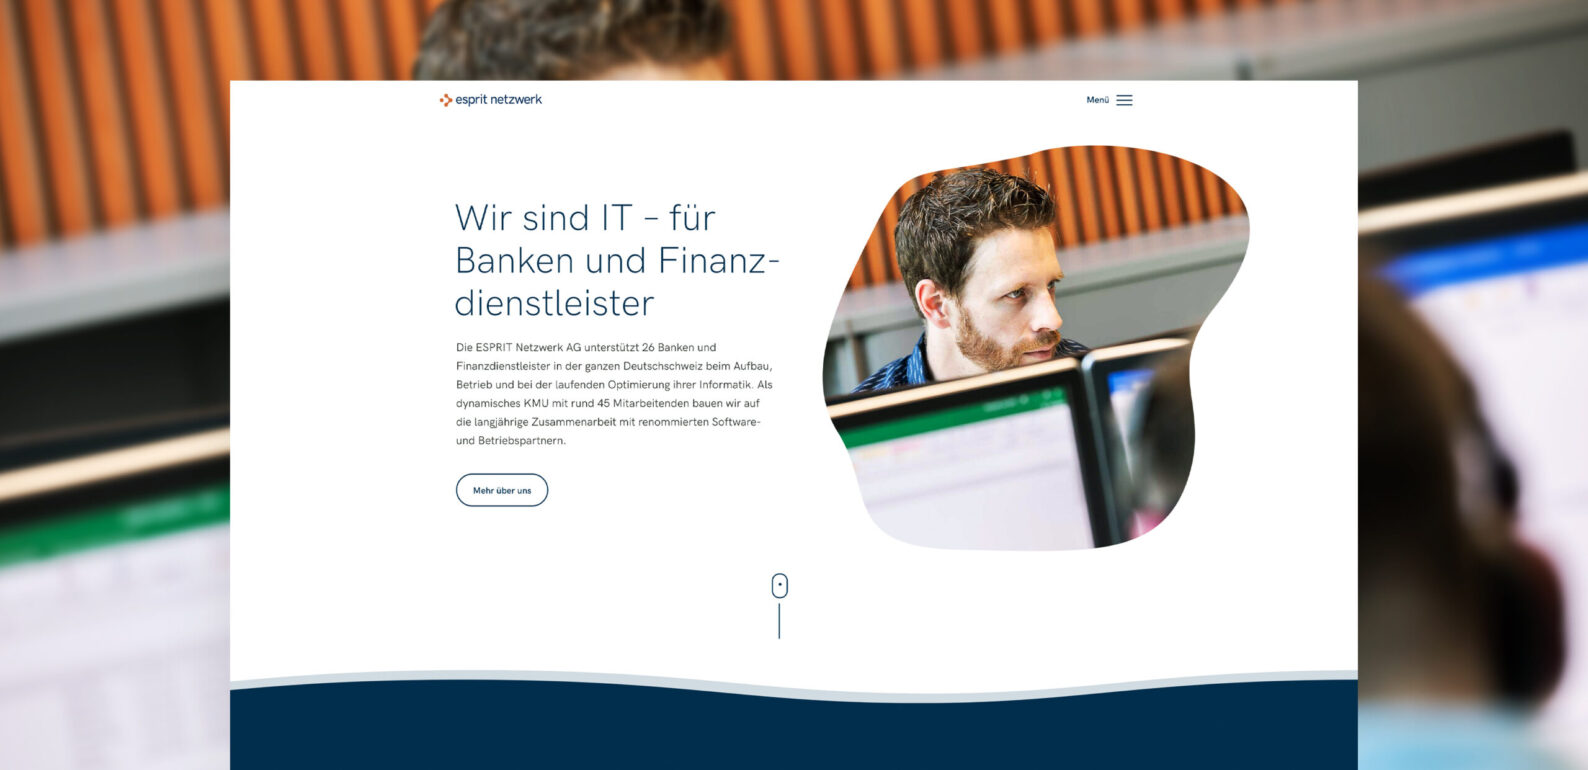 IT für Banken und Finanzdienstleister - Esprit Netzwerk AG, Website